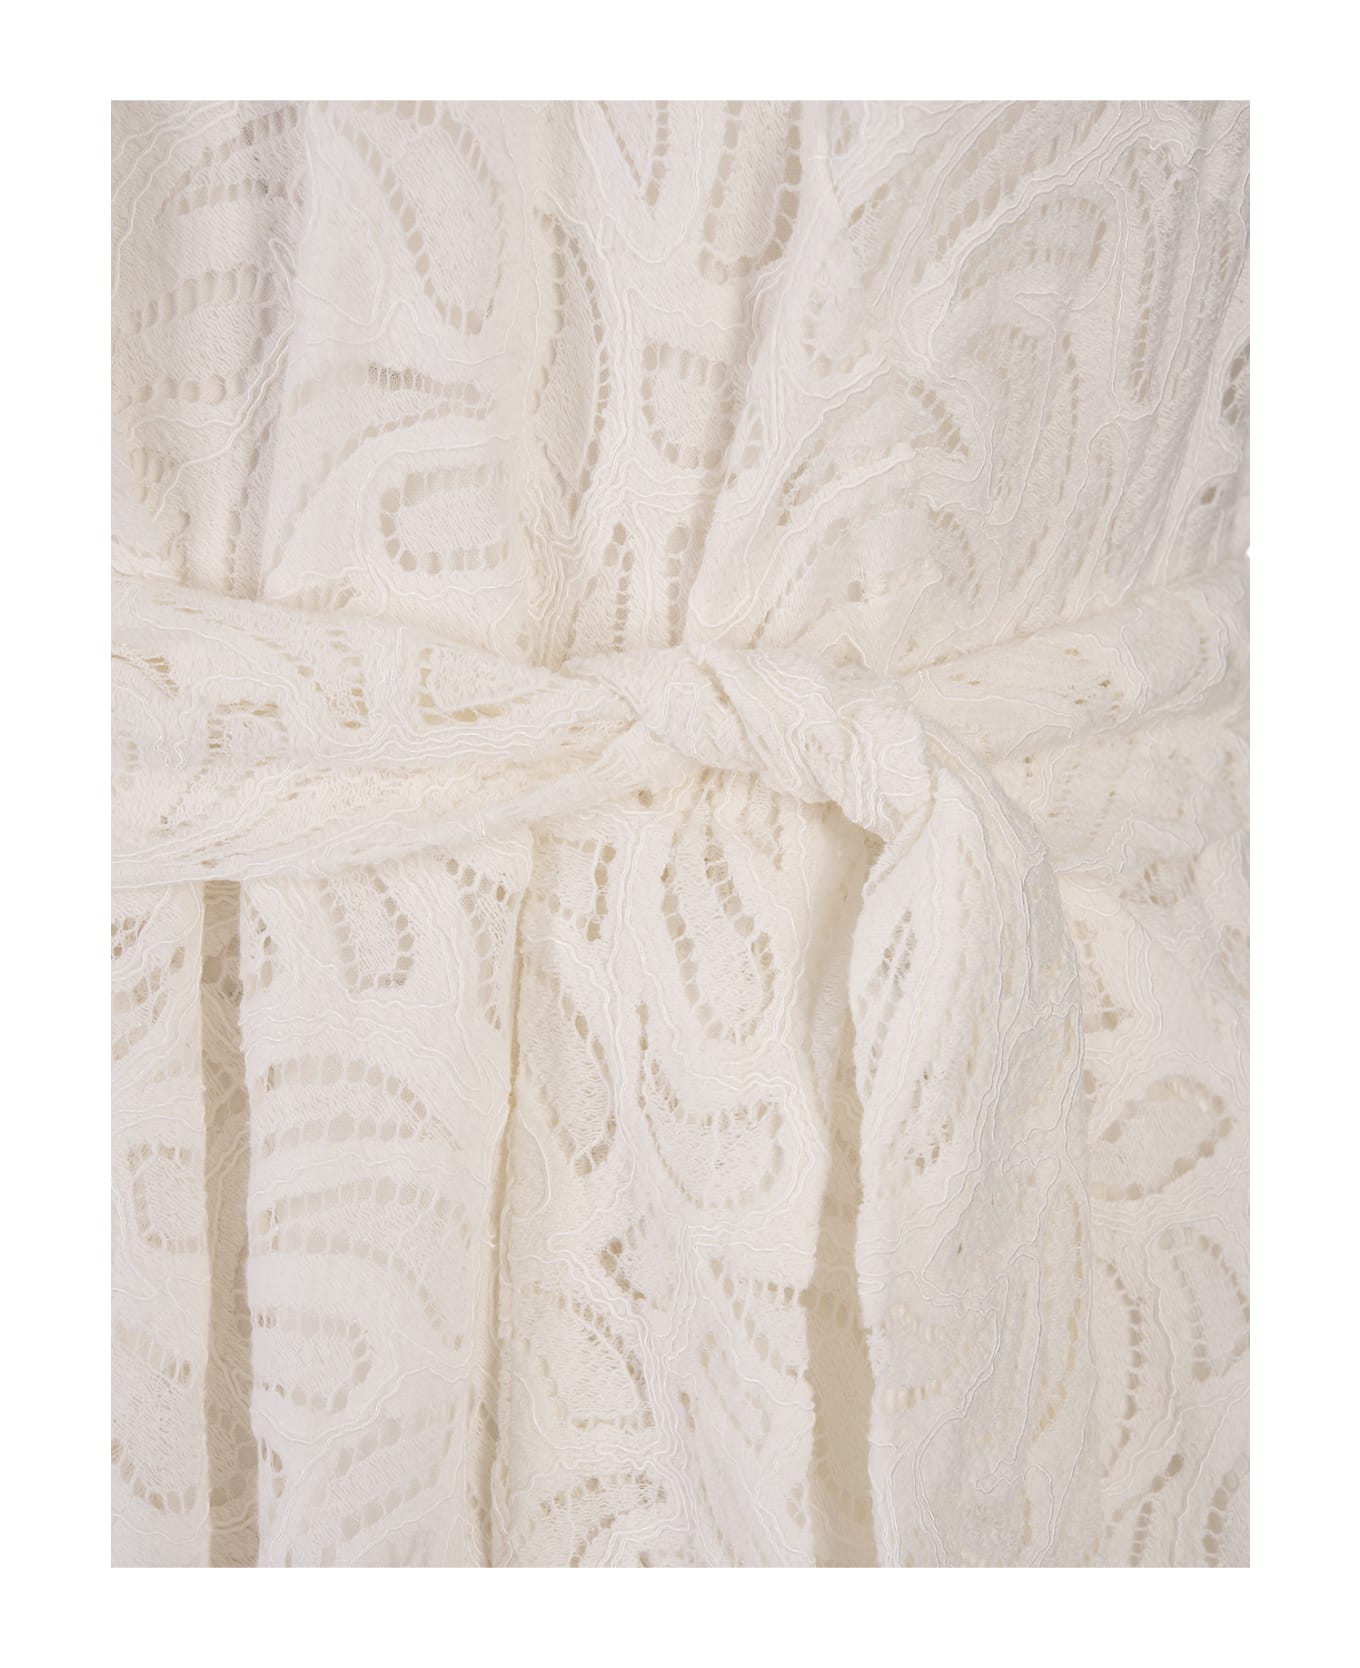 Diane Von Furstenberg Helene Dress In Ivory - White